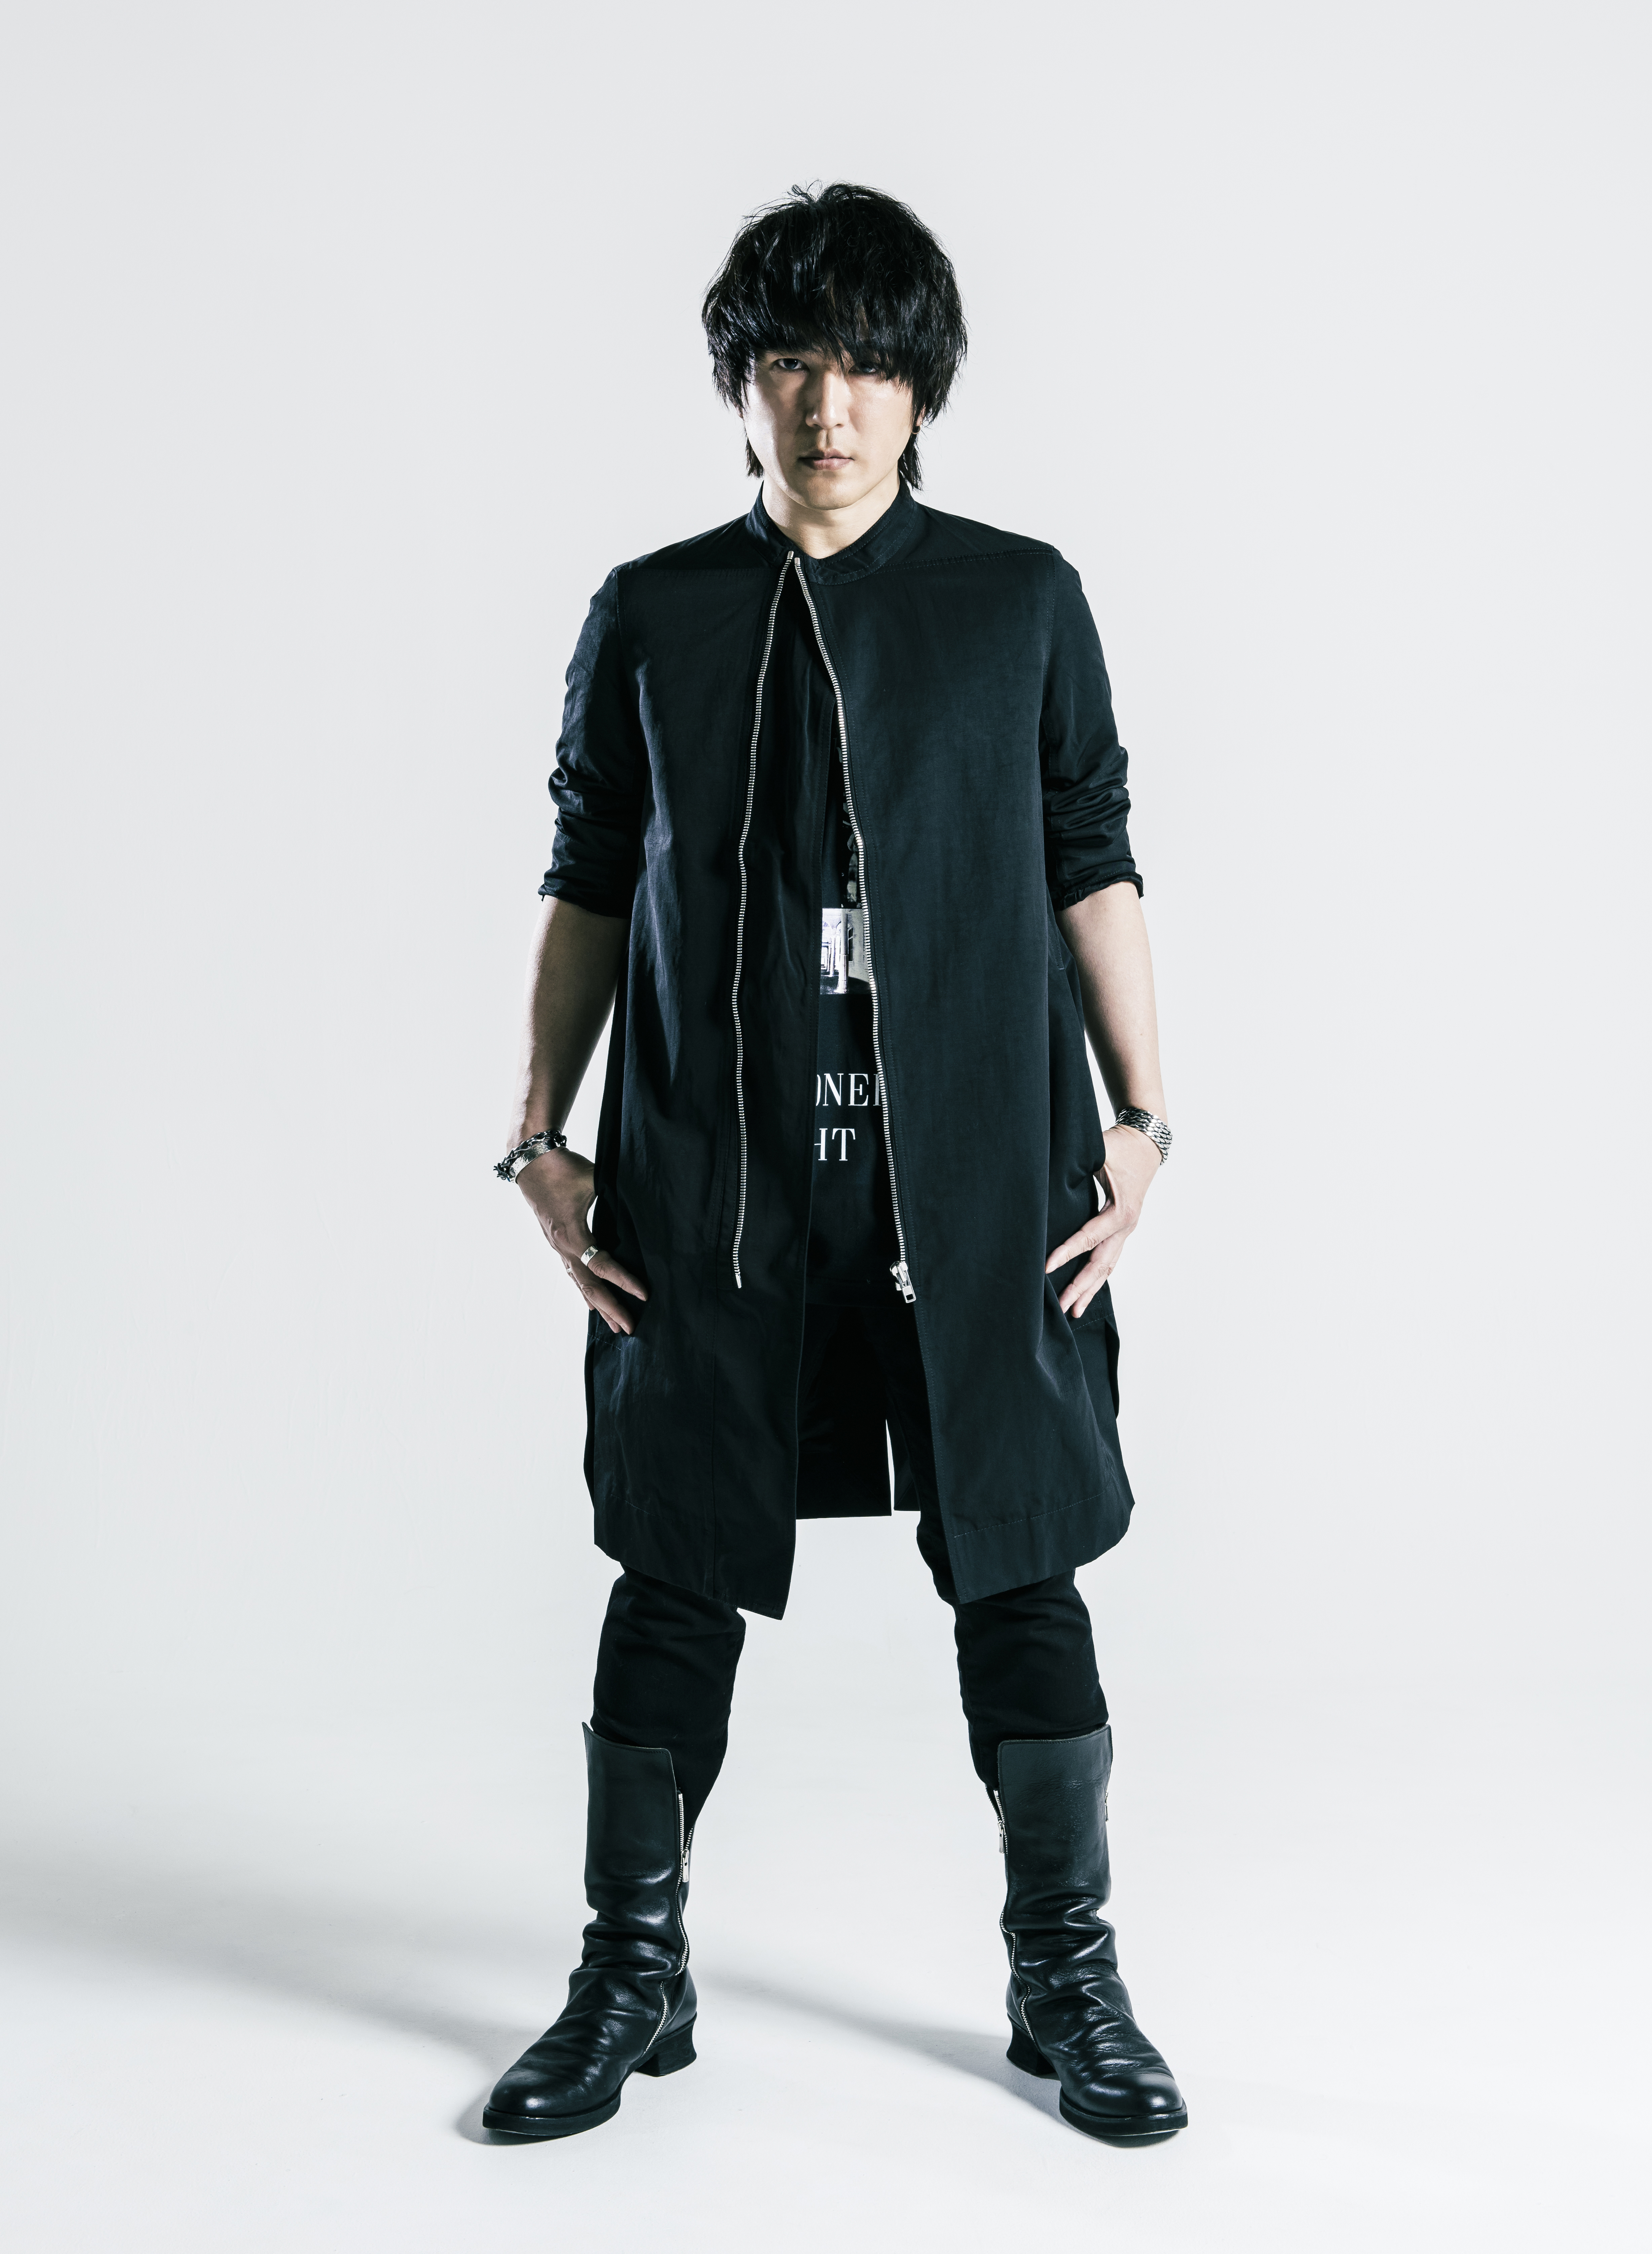 Yoshiharu Shiina LIVE 2018「Ballade」